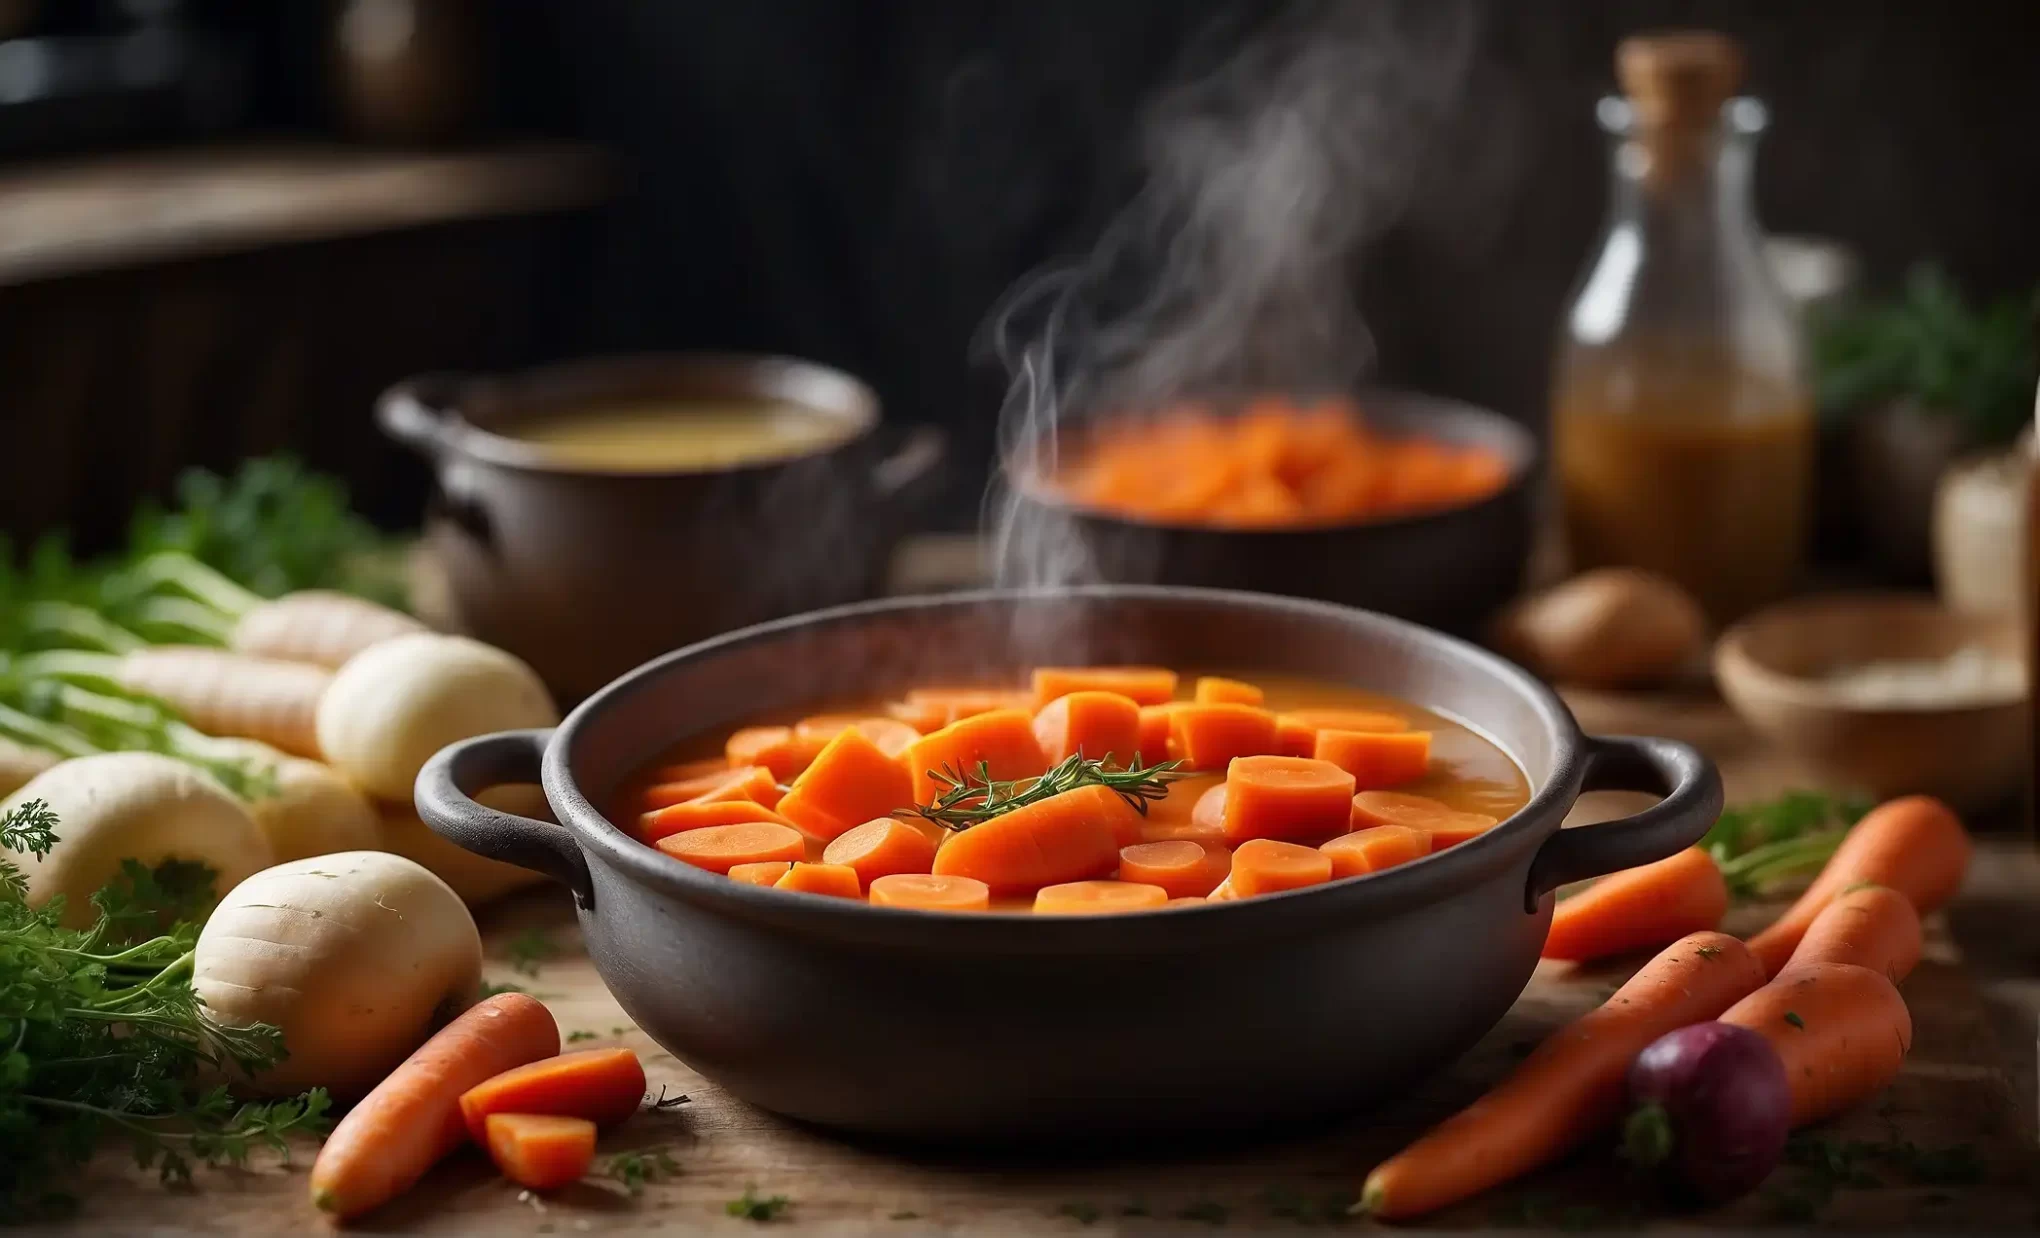 Soften Carrots for Soup